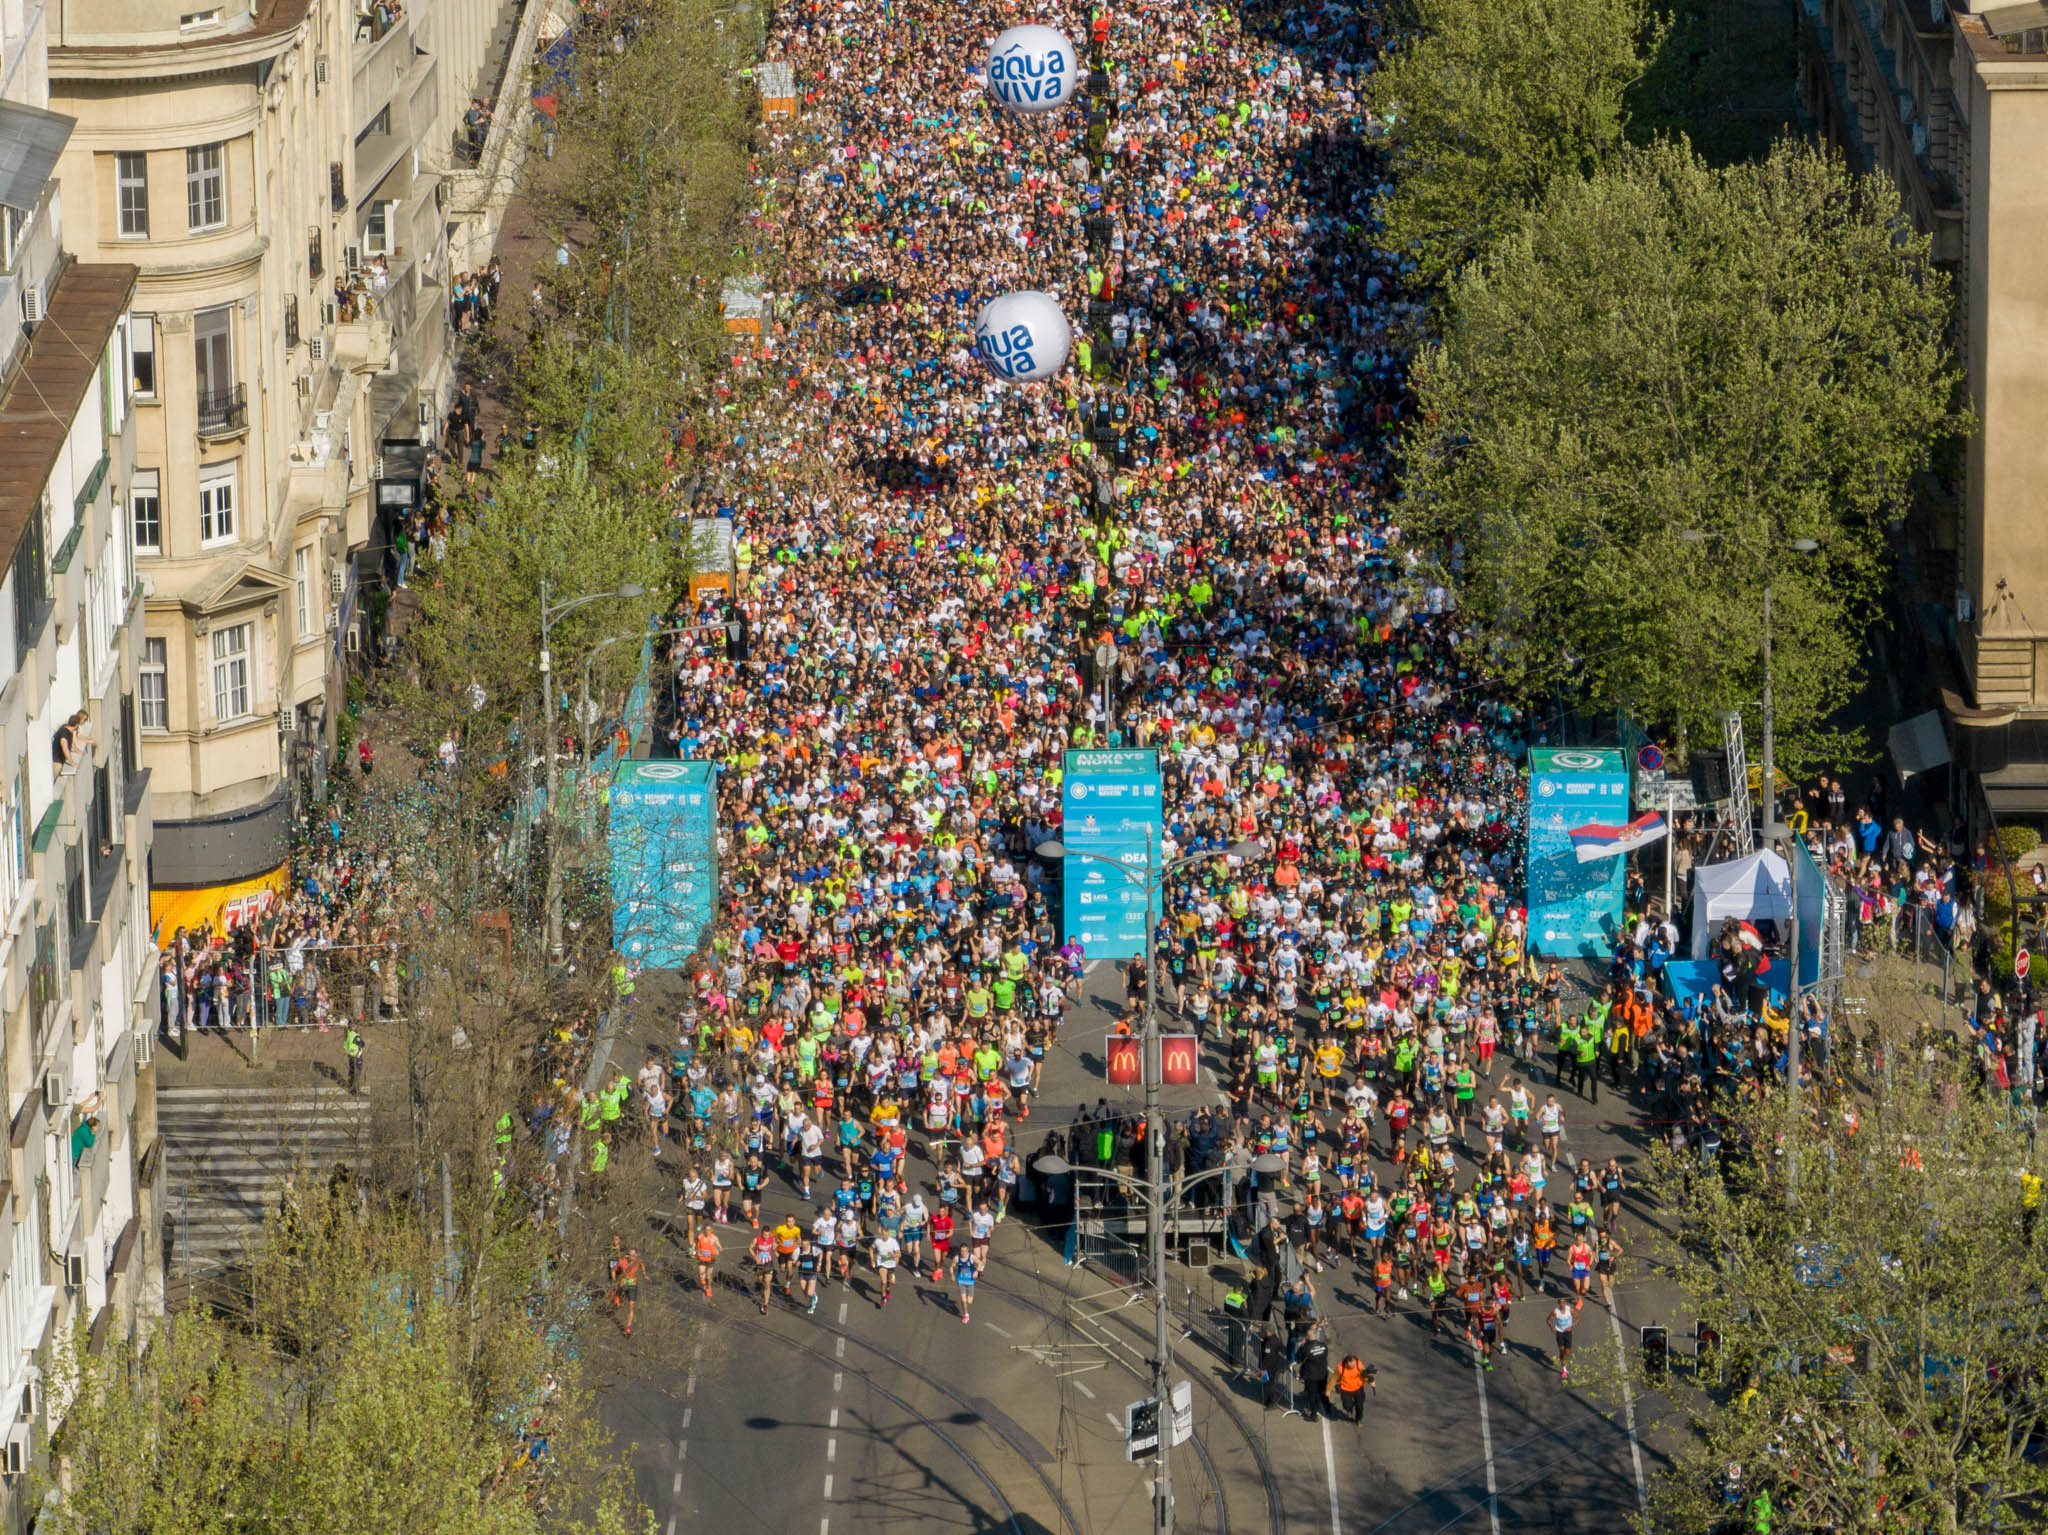 FANTASTIČNA SLIKA BEOGRADA POSLATA U SVET Darko Habuš sumirao utiske nakon 36. Beogradskog maratona